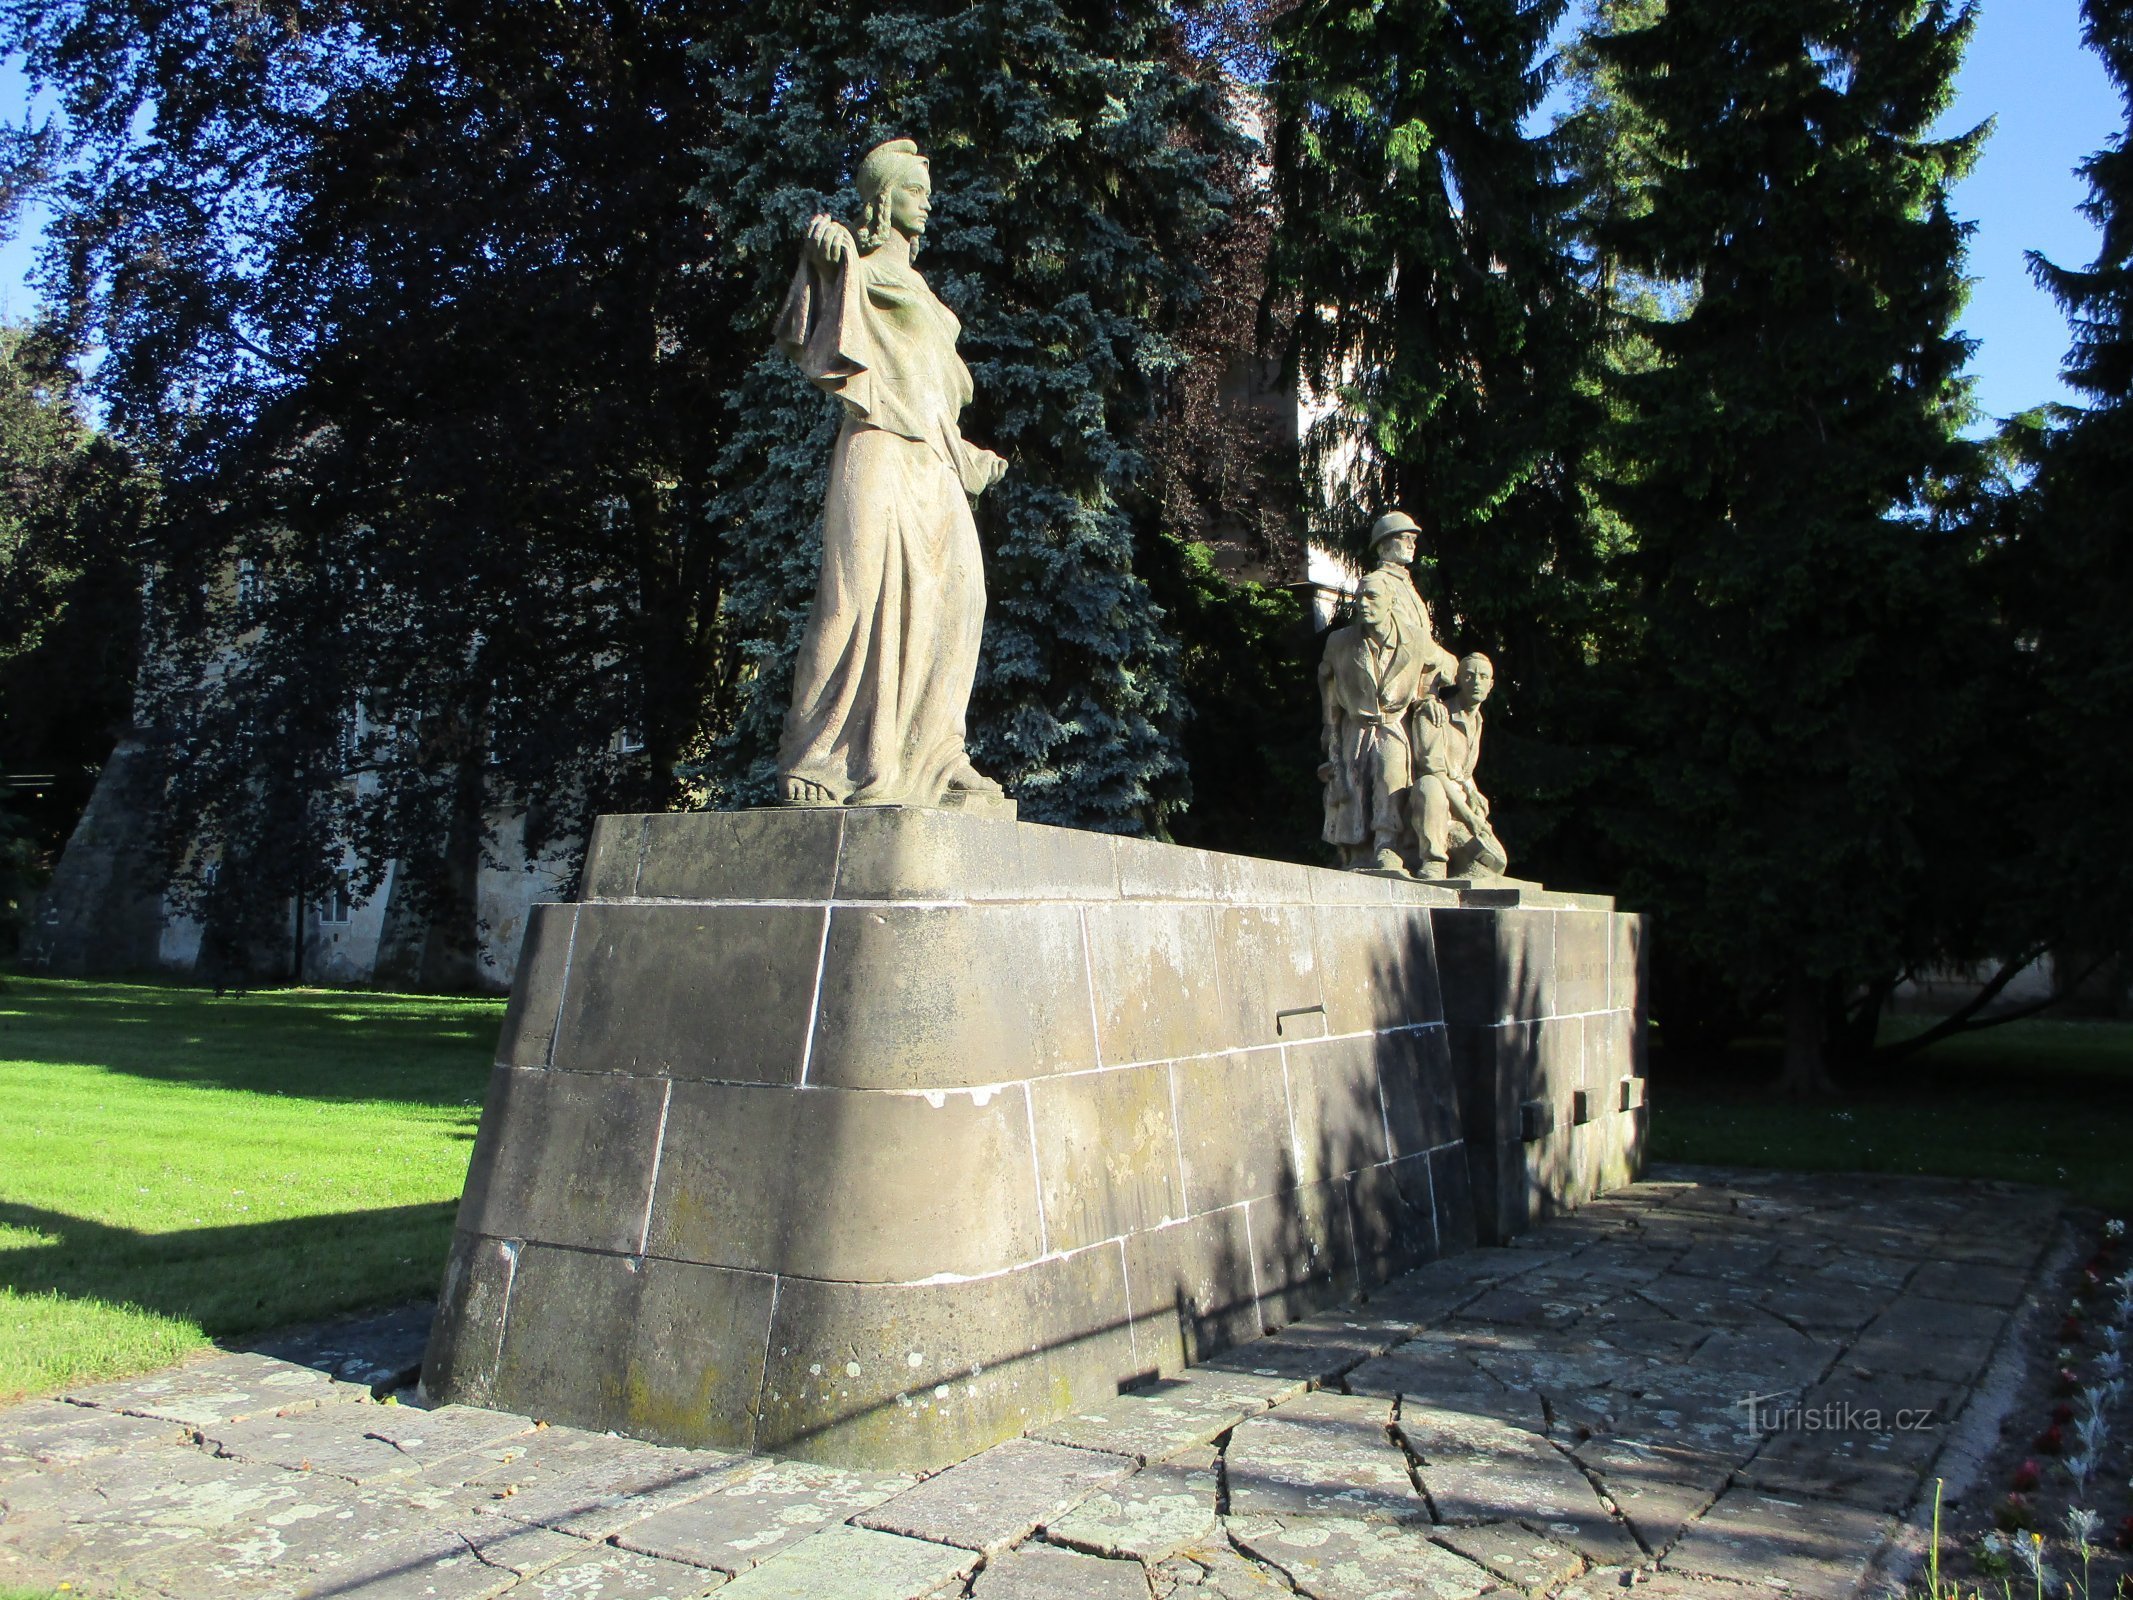 Spomenik uporu in žrtvam druge svetovne vojne (Smiřice, 2. junij 2.6.2019)